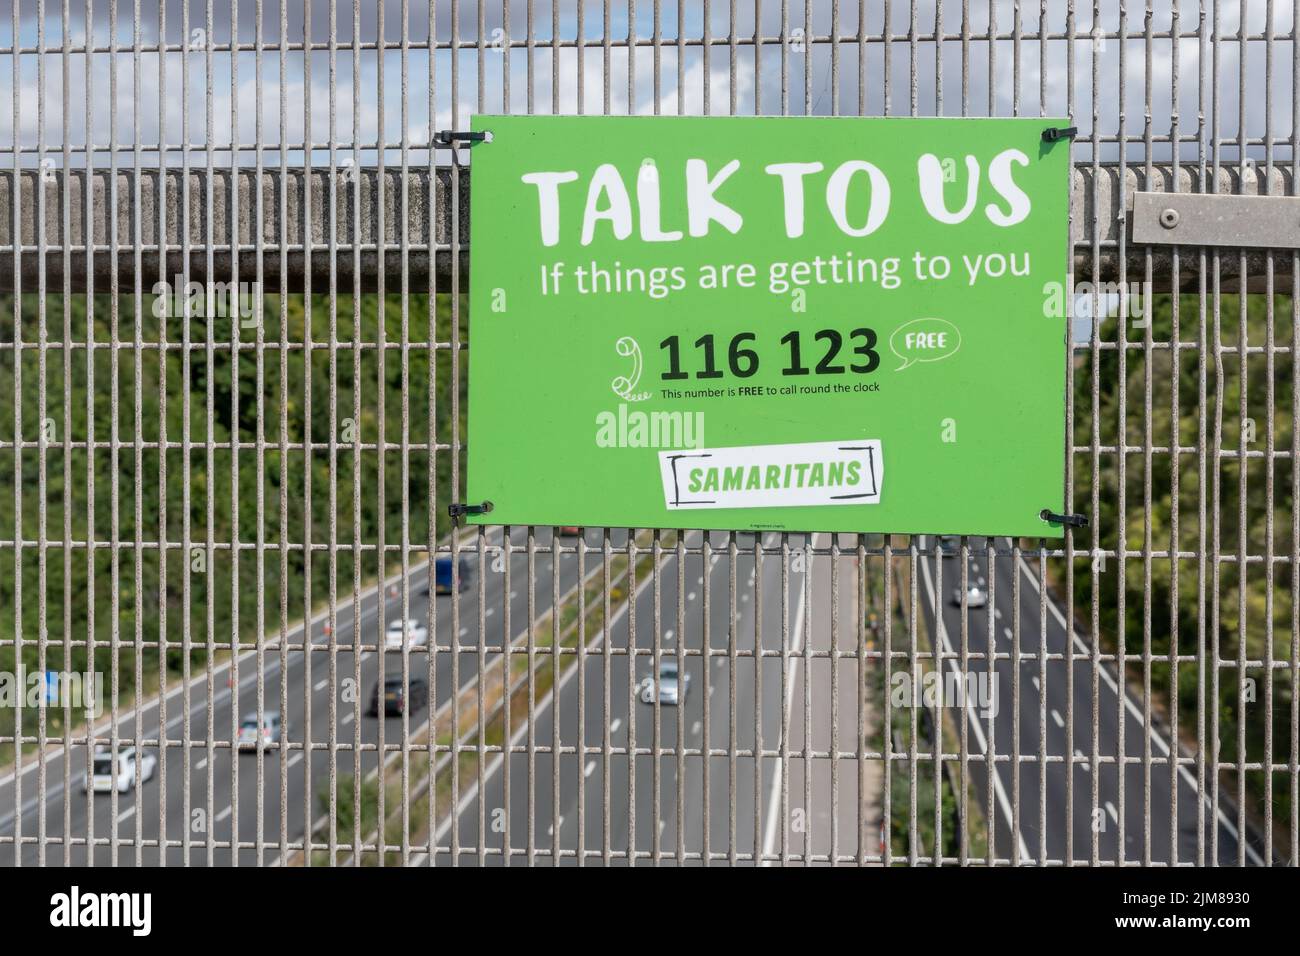 Les Samaritains signent ou avis sur le pont autoroutier M3, essayant de prévenir les suicides, Angleterre, Royaume-Uni Banque D'Images